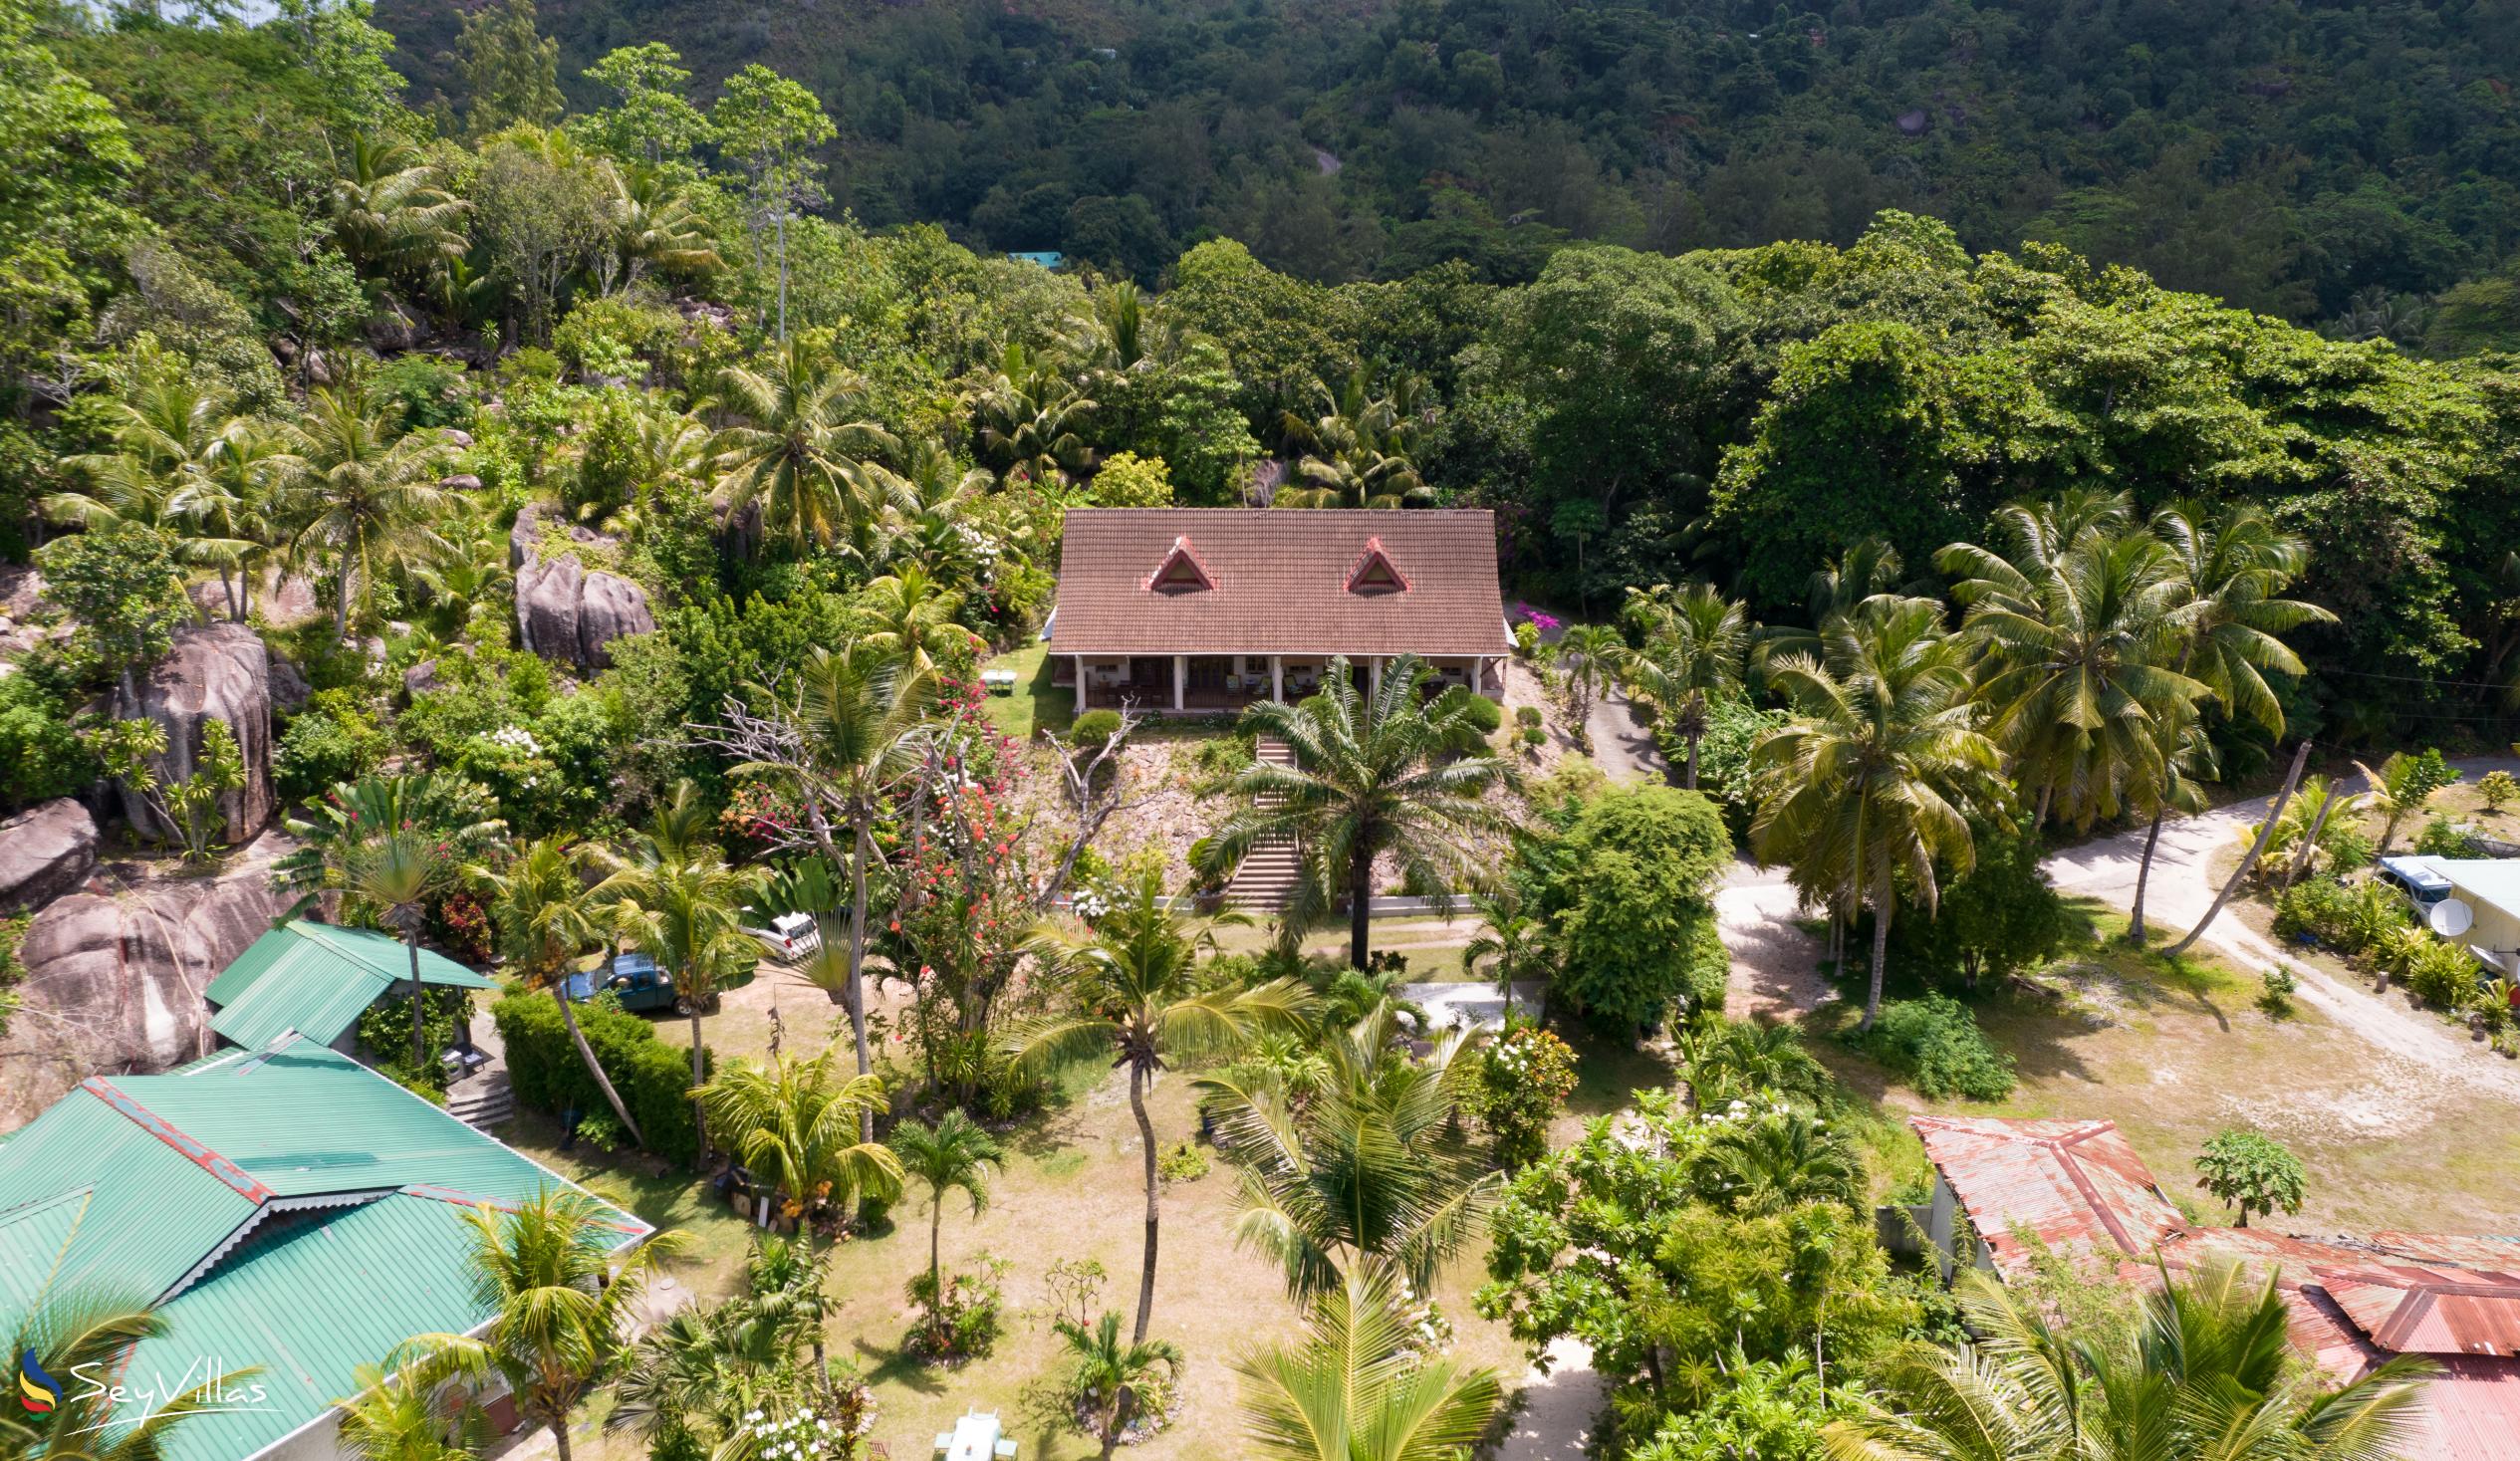 Foto 7: Villas du Voyageur - Aussenbereich - Praslin (Seychellen)